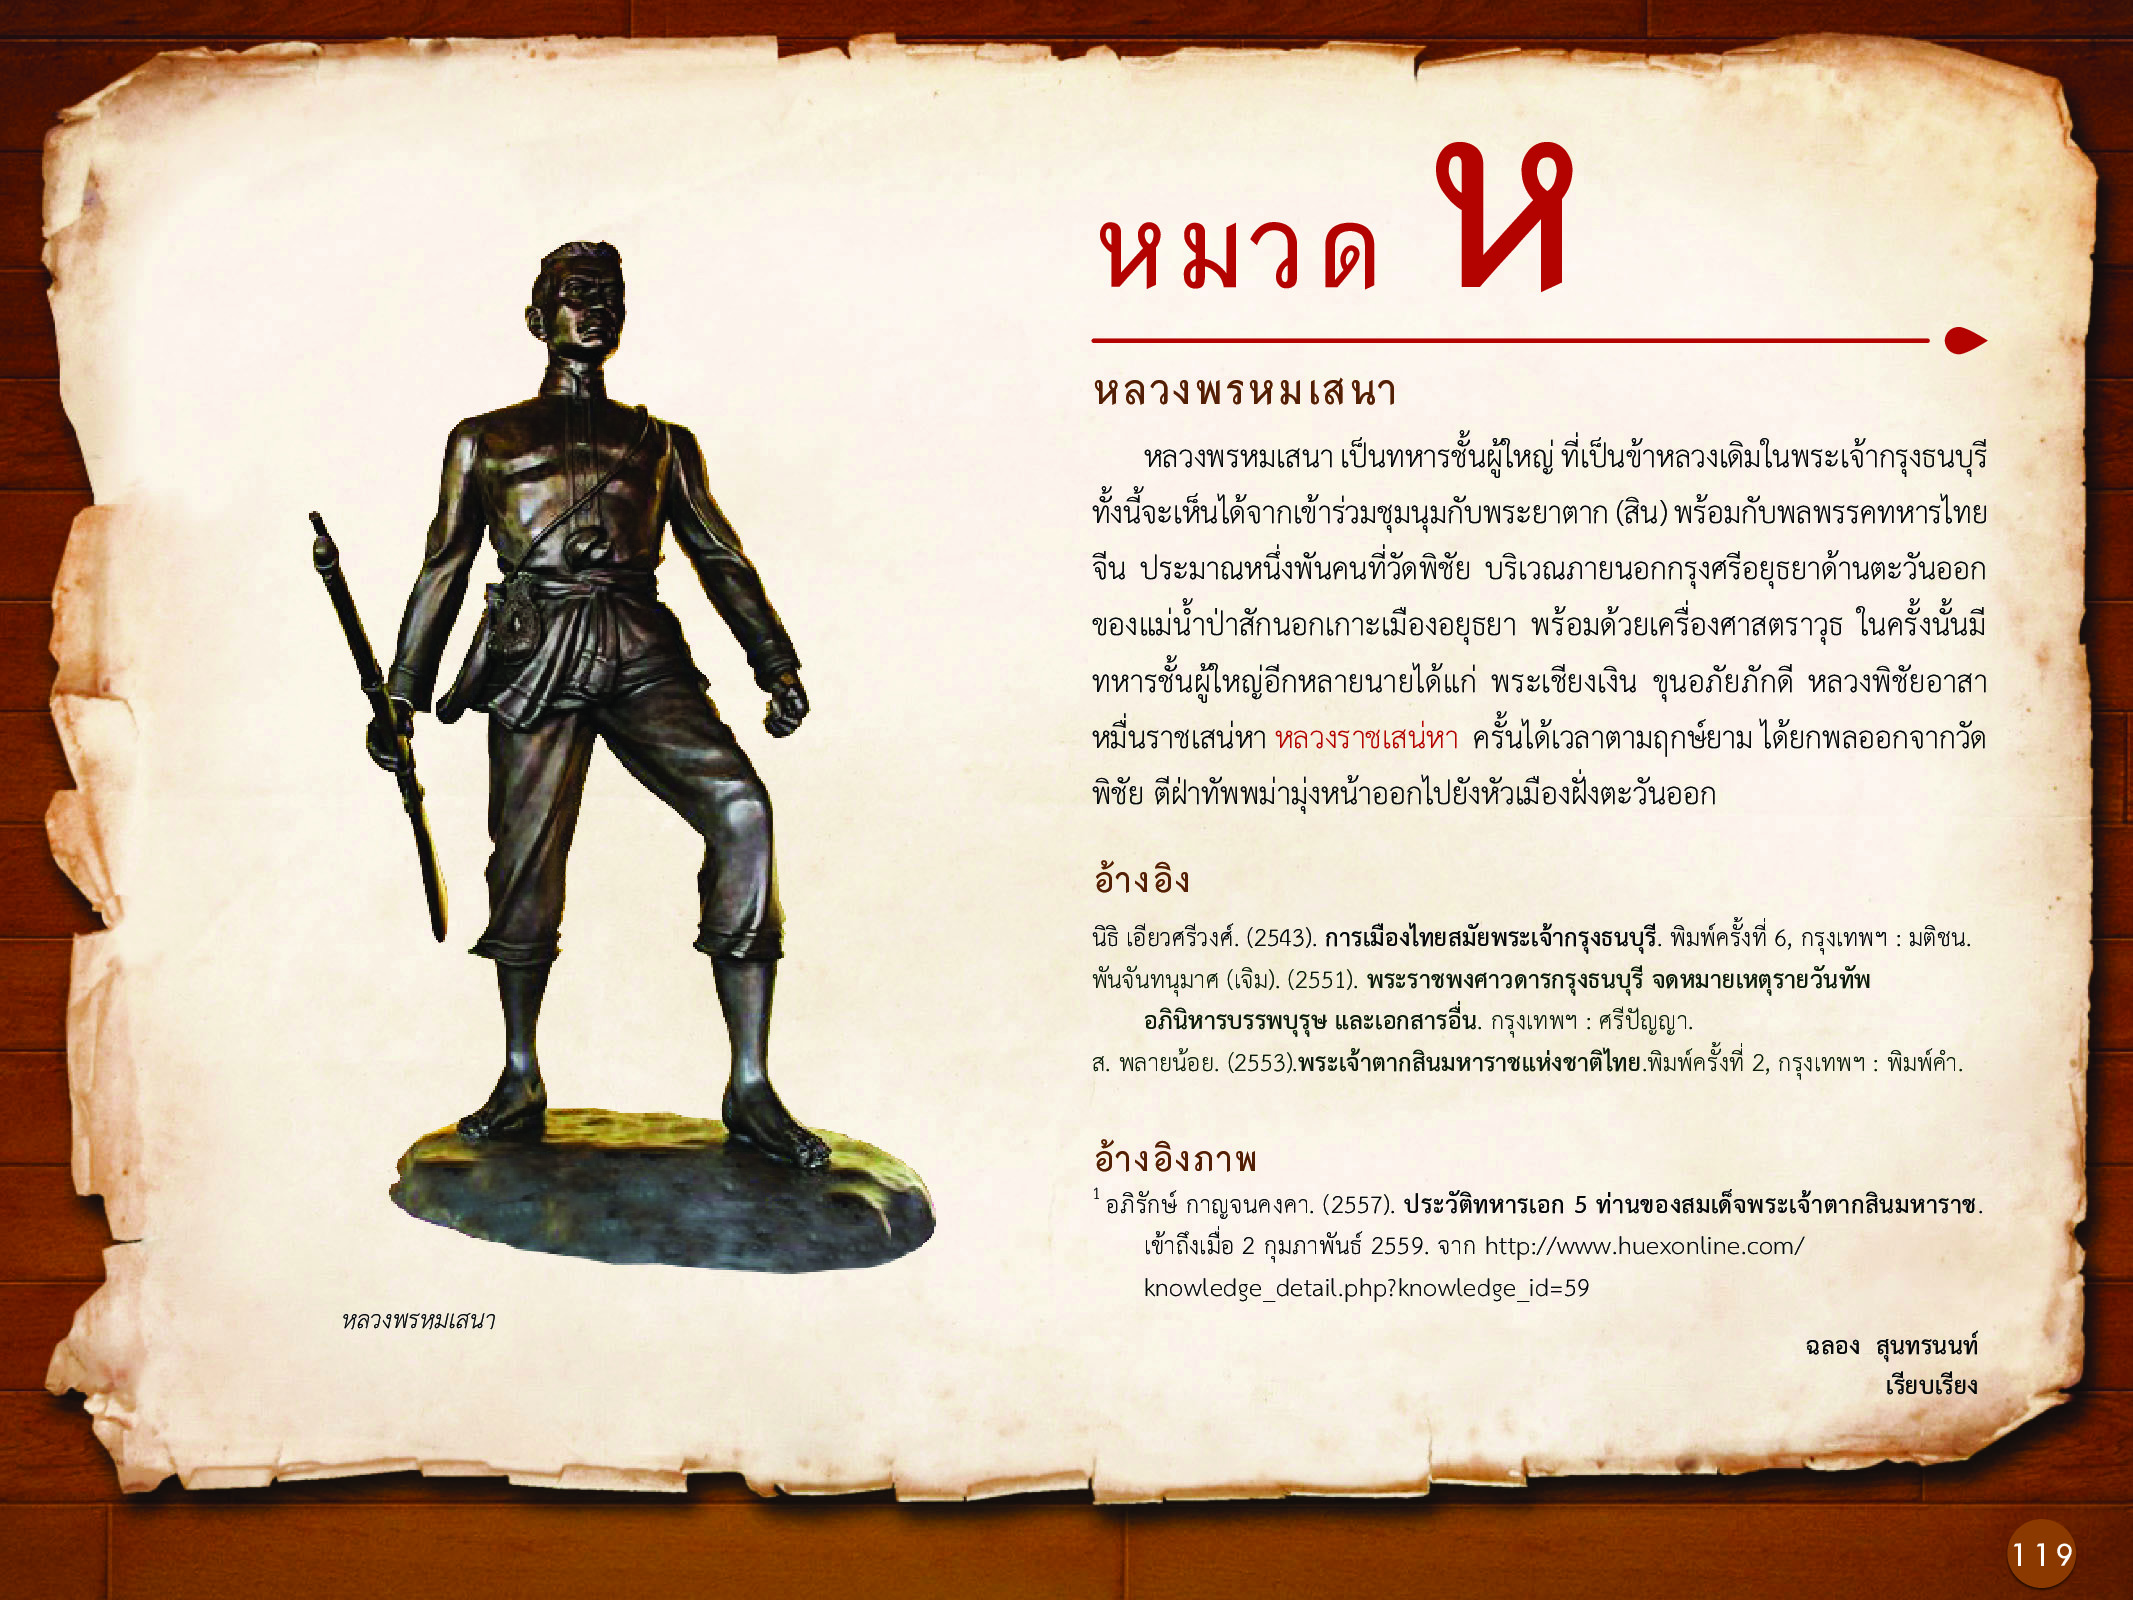 ประวัติศาสตร์กรุงธนบุรี ./images/history_dhonburi/119.jpg